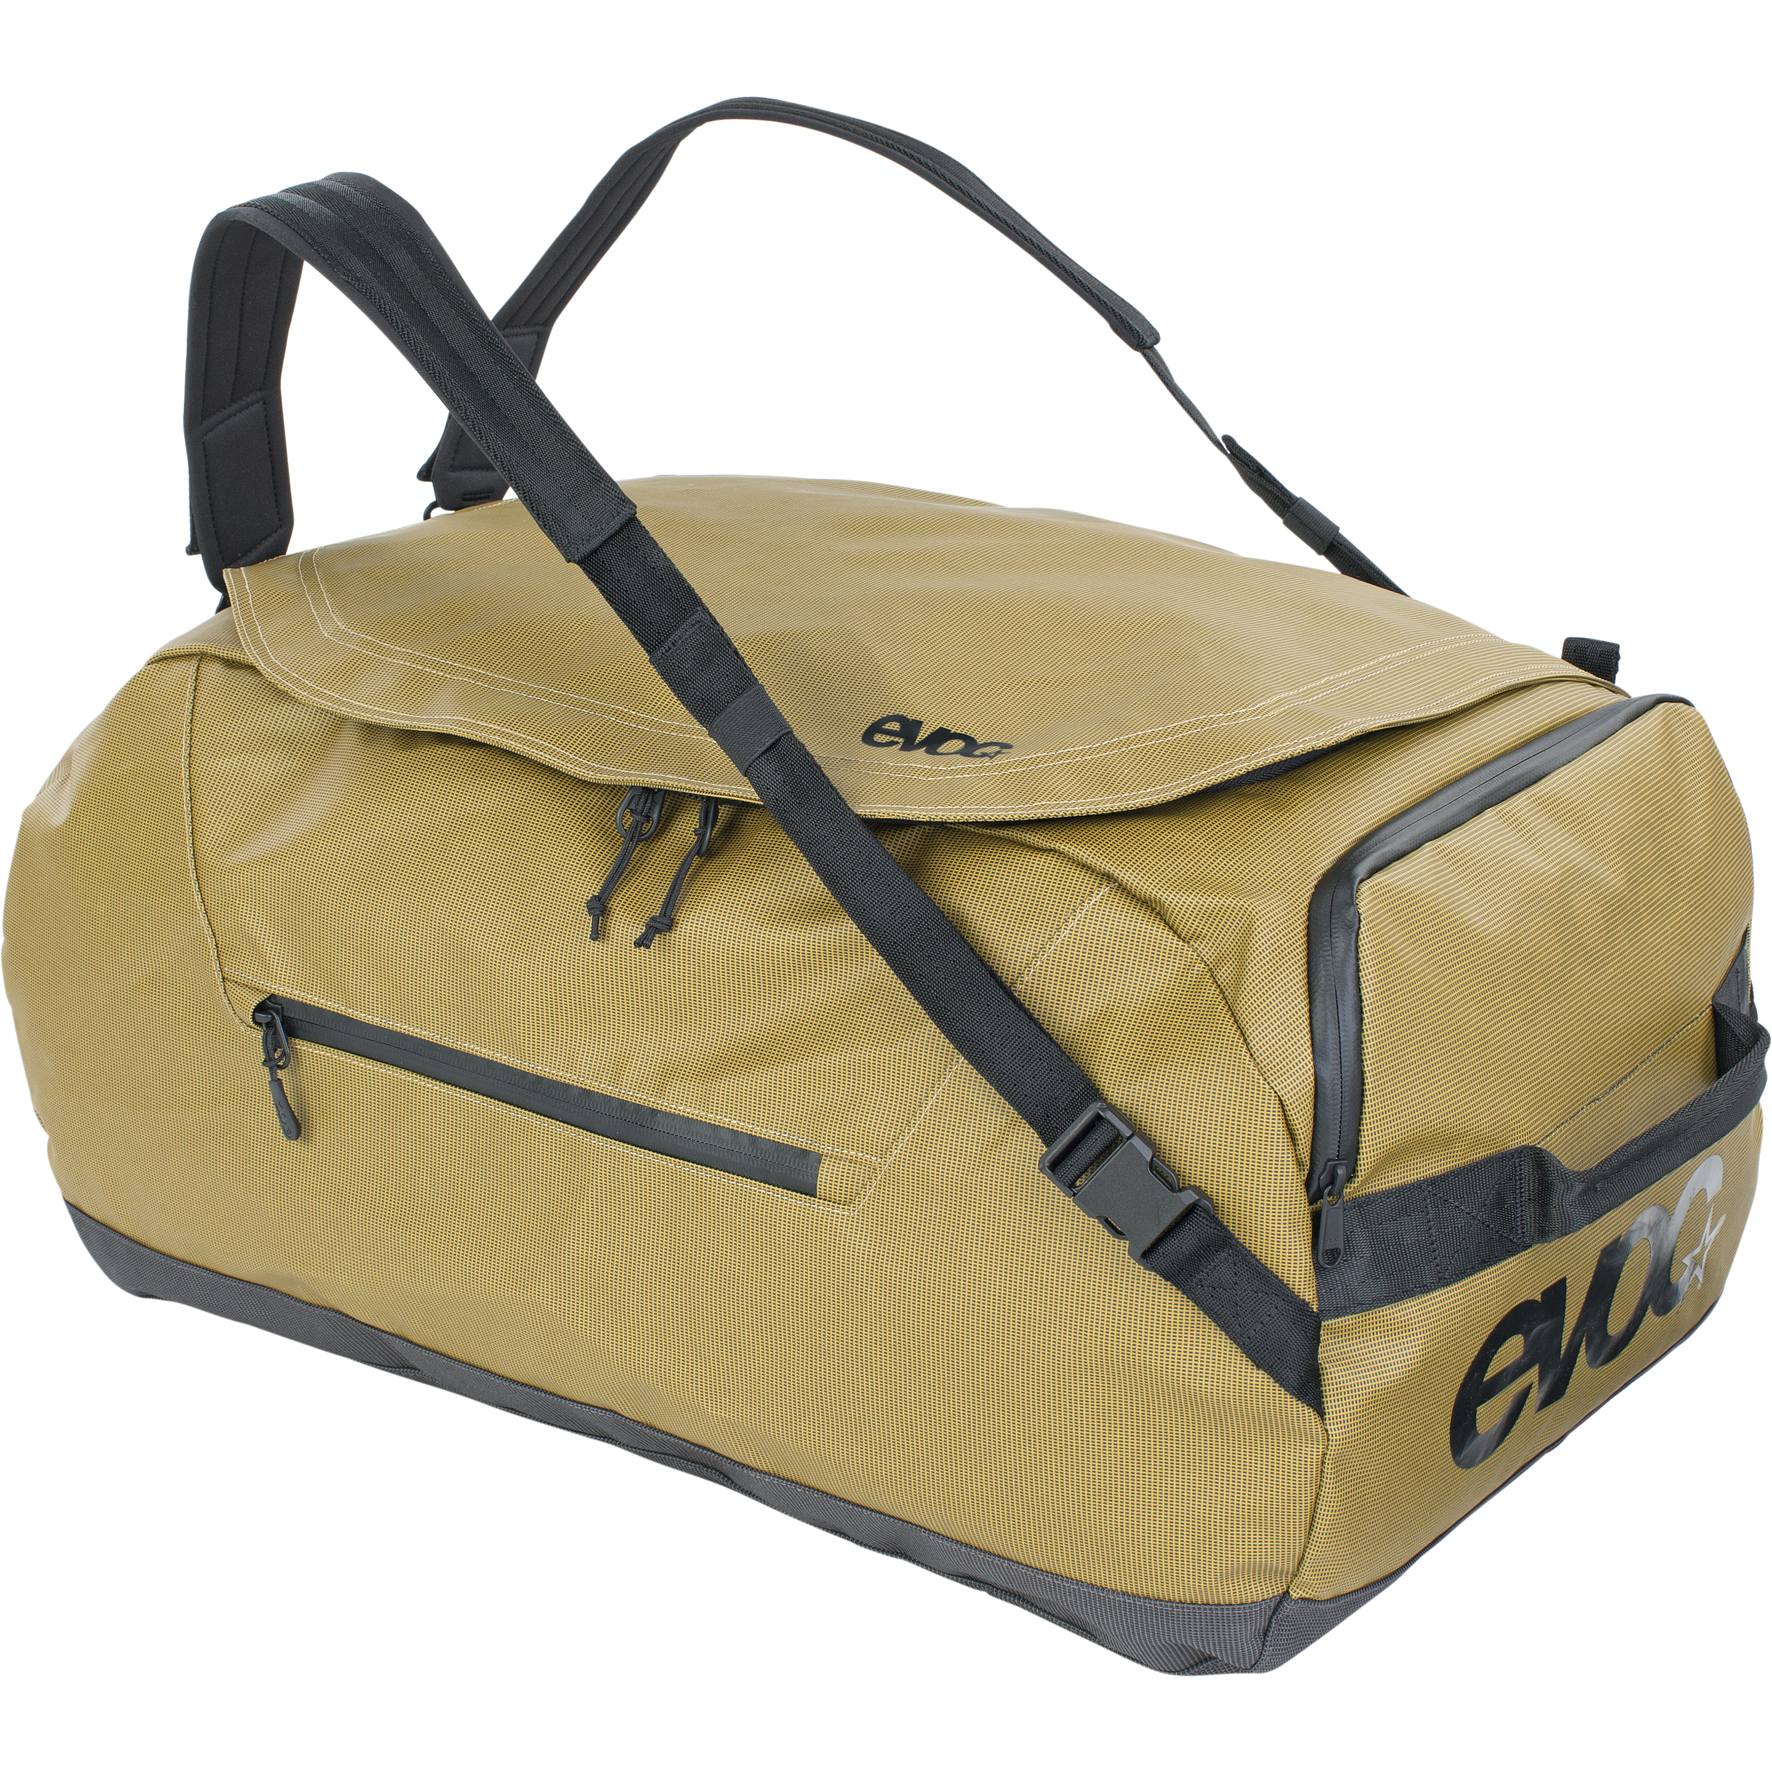 Produktbild von EVOC Duffle Bag 60L Reisetasche - Curry/Black